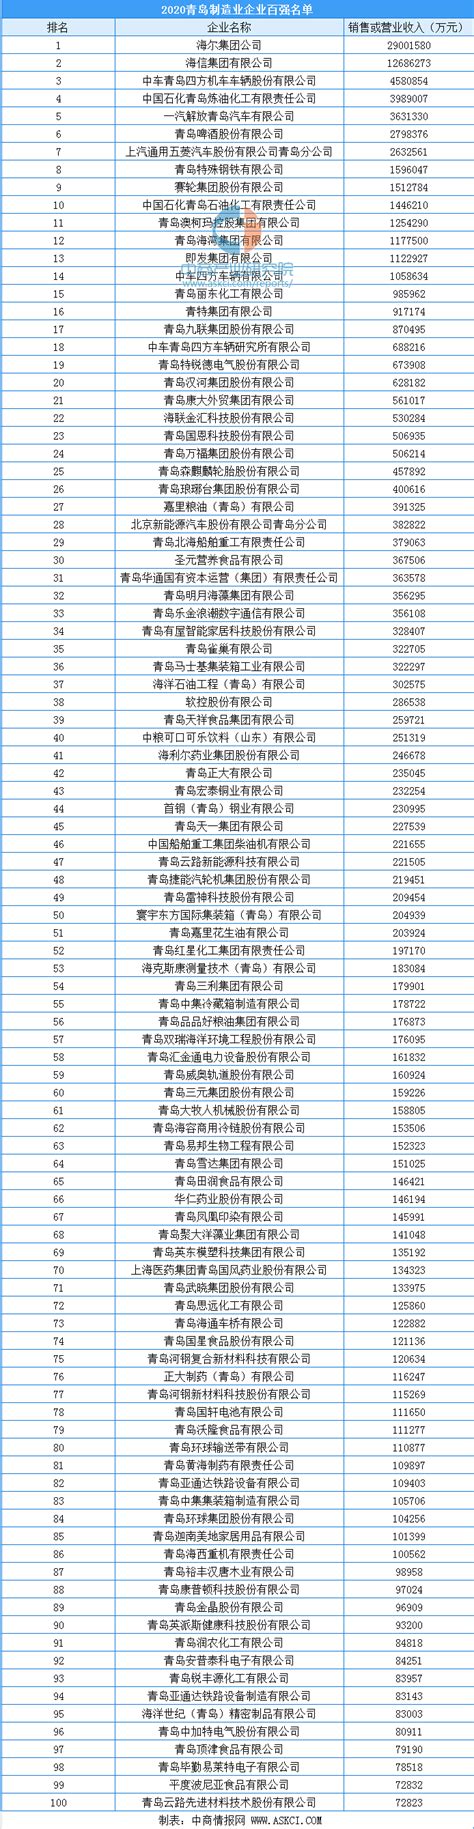 青岛市A股上市公司名录(截至2021年1月) - 知乎